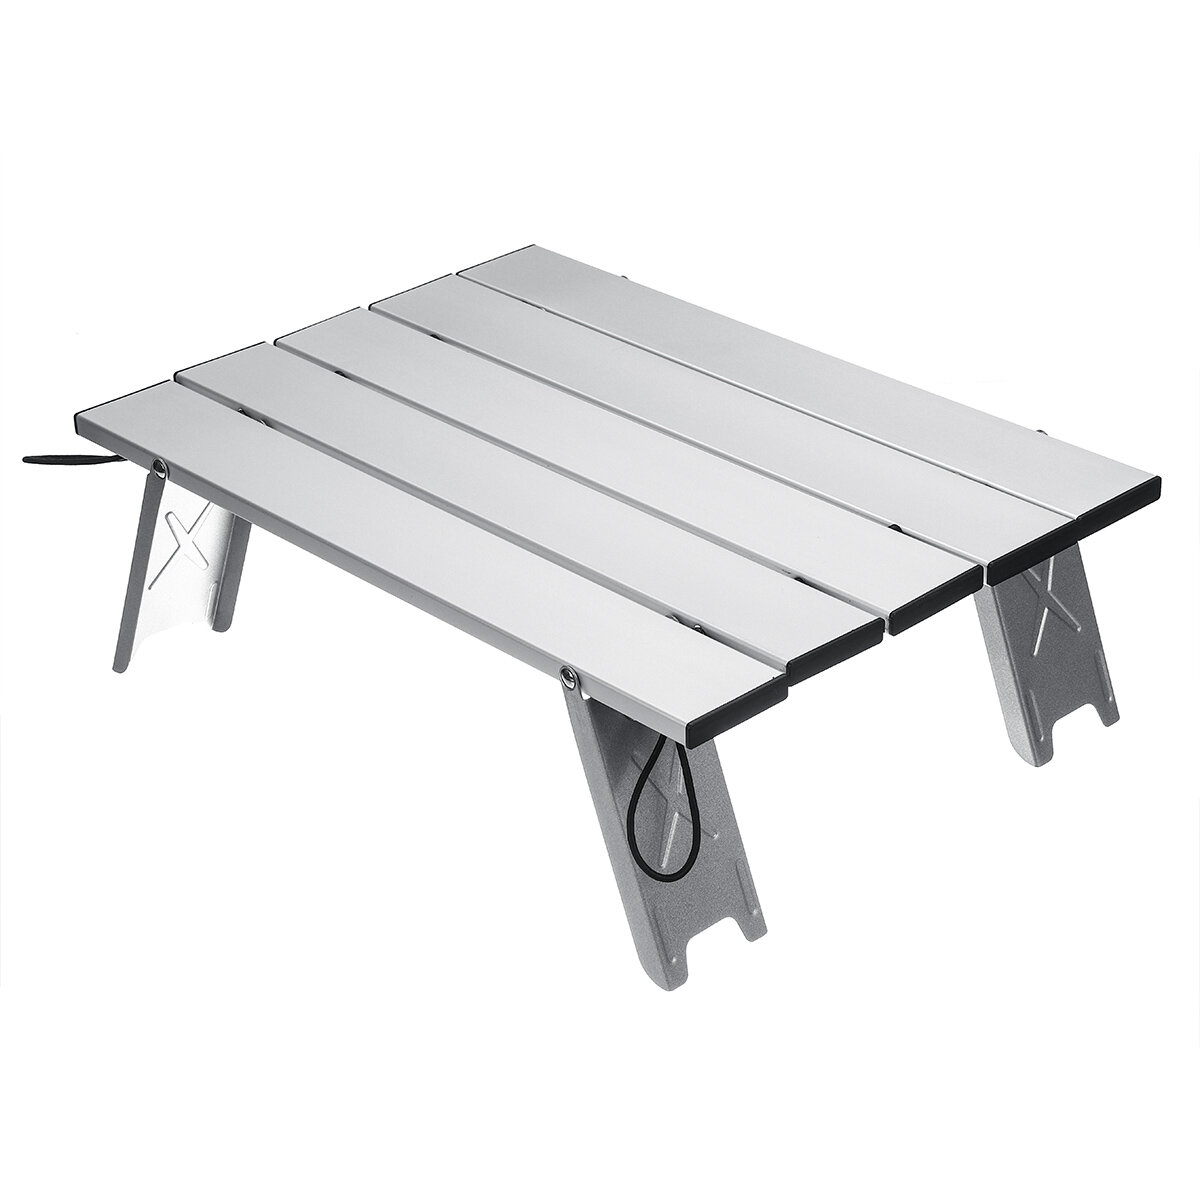 ポータブル屋外折りたたみテーブルチェアキャンプアルミニウム合金ピクニックテーブル防水超軽量耐久性テーブル40x29x12cm